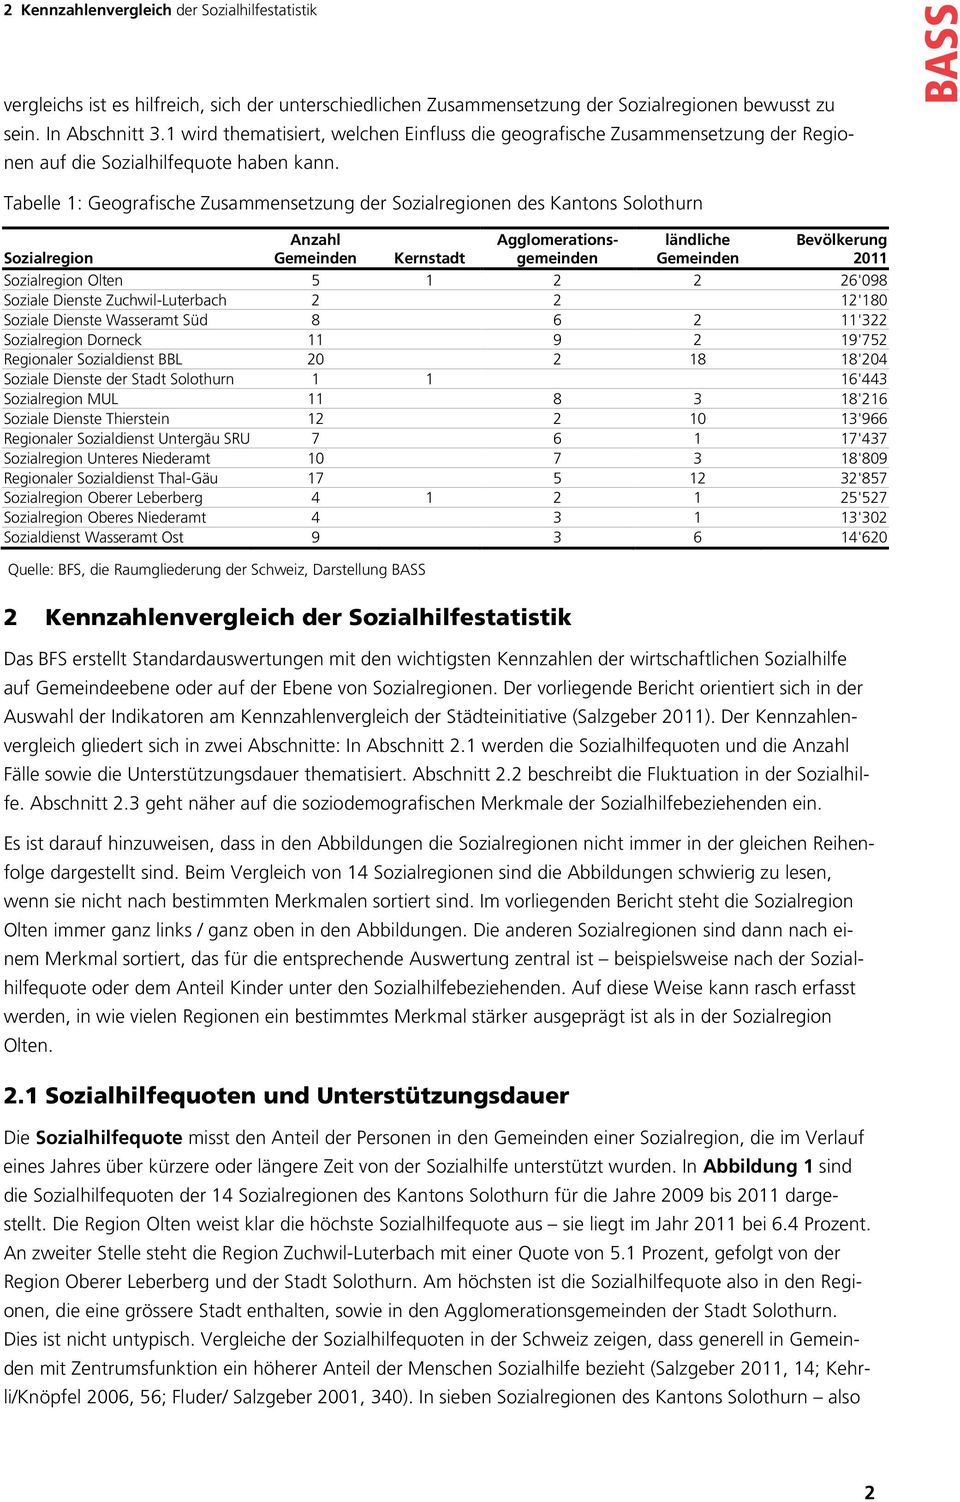 Tabelle 1: Geografische Zusammensetzung der Sozialregionen des Kantons Solothurn Sozialregion Anzahl Gemeinden Kernstadt Agglomerationsgemeinden ländliche Gemeinden Bevölkerung 2011 Sozialregion